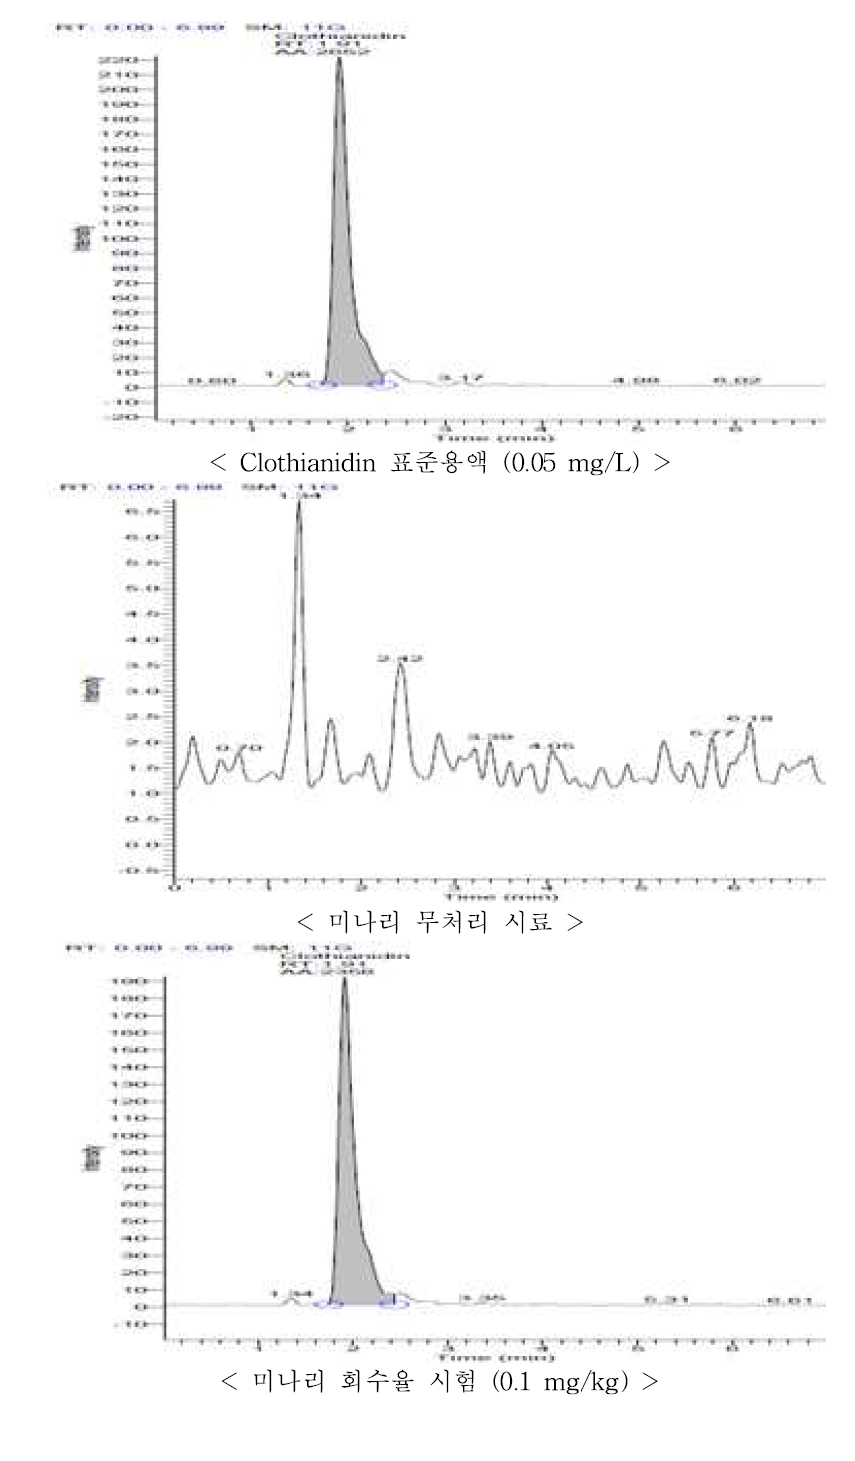 미나리 중 clothianidin의 회수율 크로마토그램